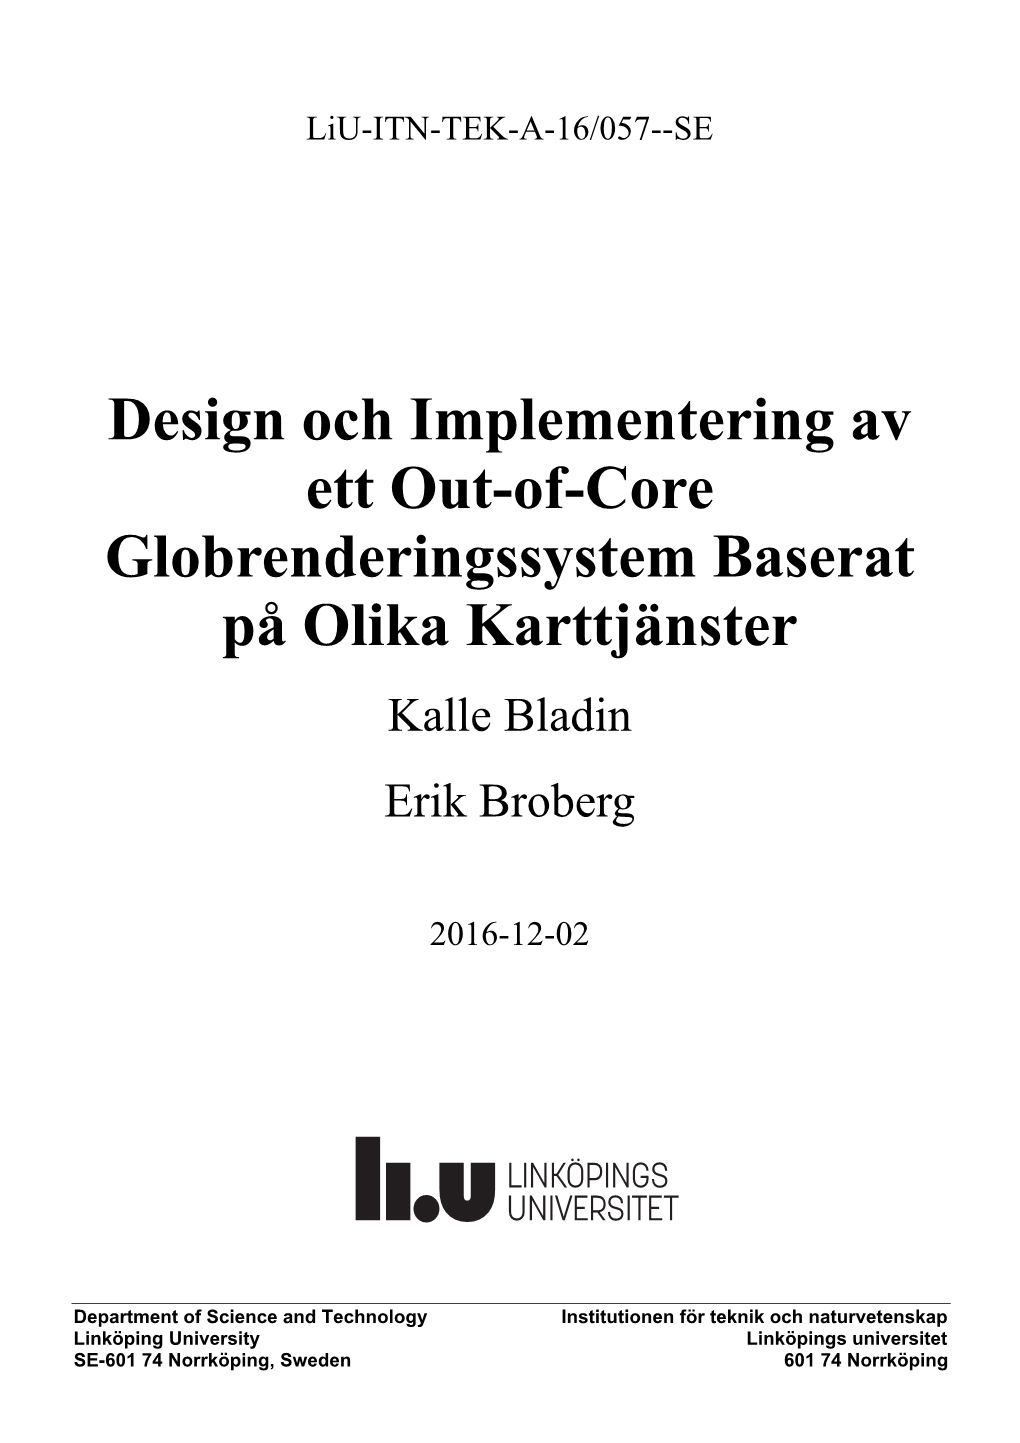 Design Och Implementering Av Ett Out-Of-Core Globrenderingssystem Baserat På Olika Karttjänster Kalle Bladin Erik Broberg